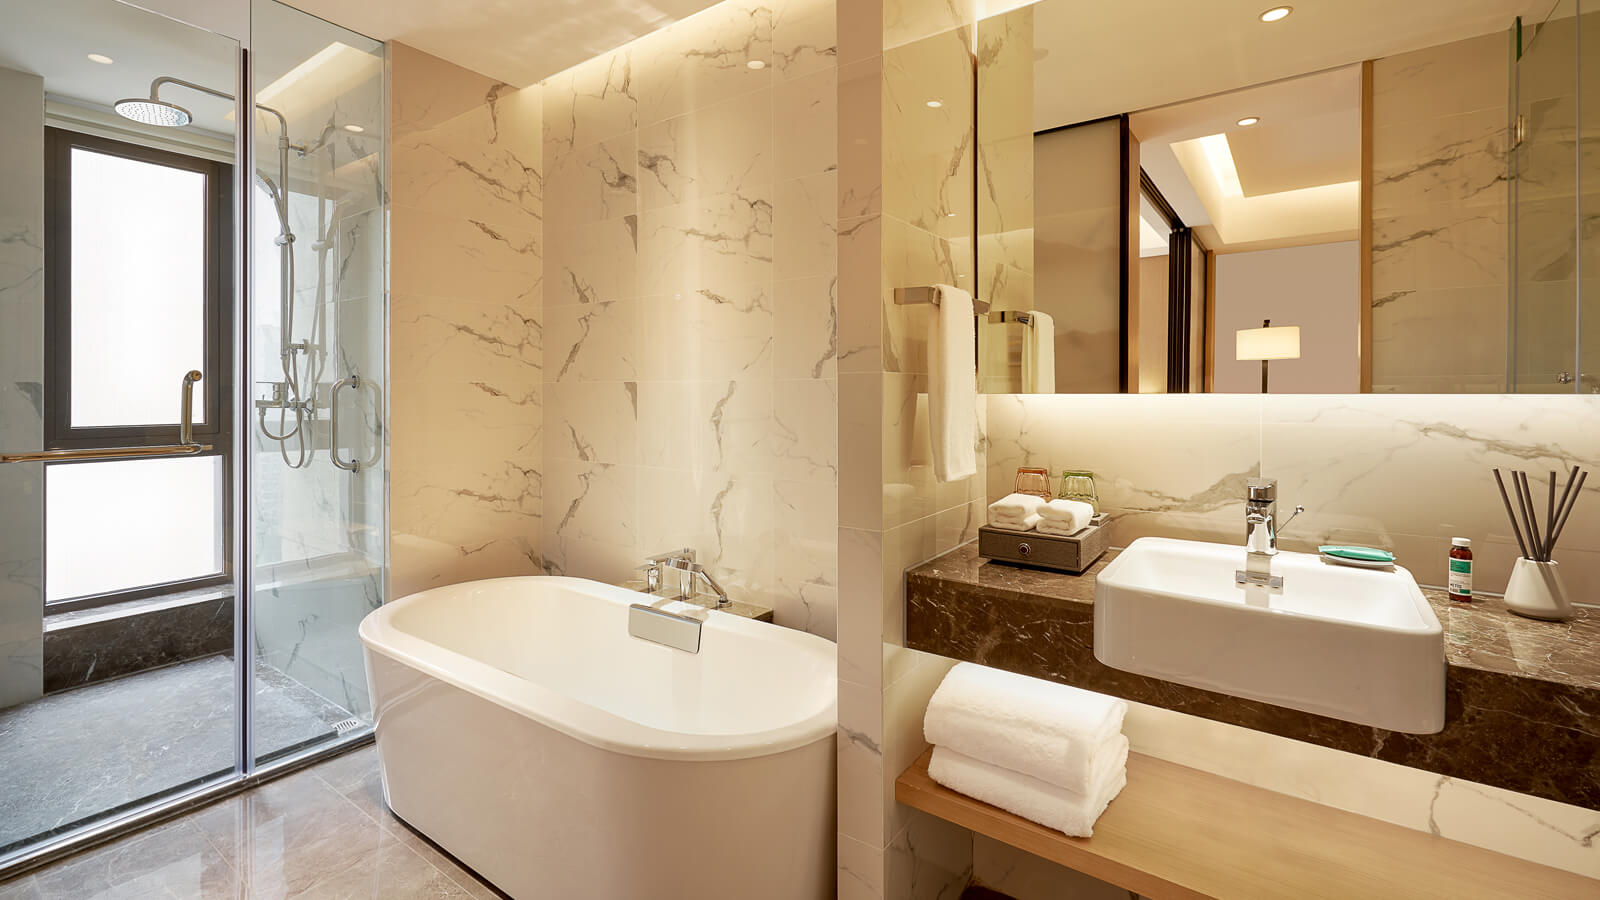 一臥室套房的用浴室 - 杭州紫金港莎瑪酒店 - 杭州紫金港莎瑪酒店